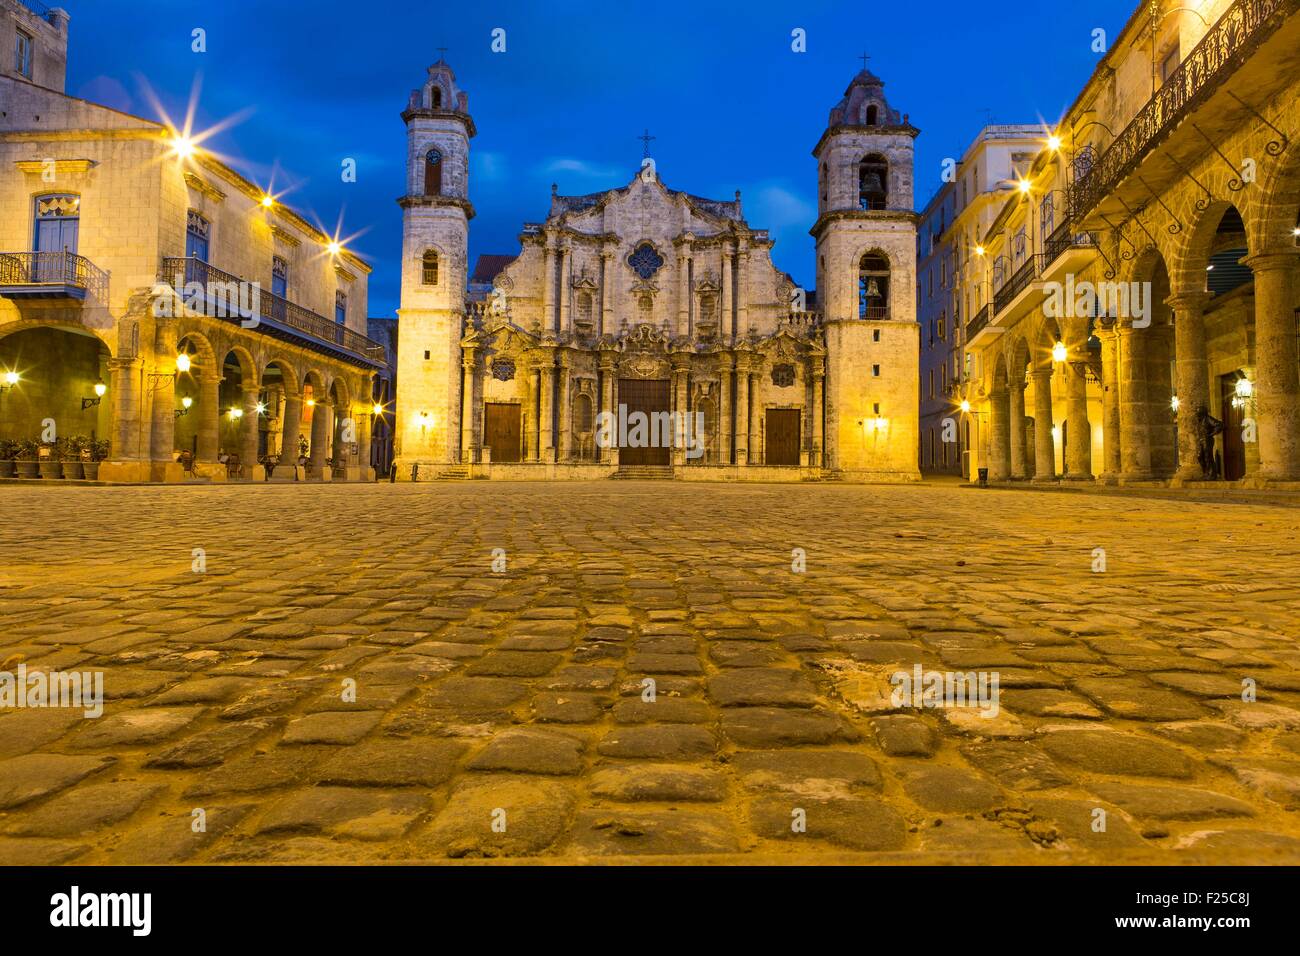 Cuba, Ciudad de la Habana province, La Havana, La Habana Vieja district listed as World Heritage, Cathedral square and Catedral de la Virgen Maria de la Concepcion Immaculada Stock Photo